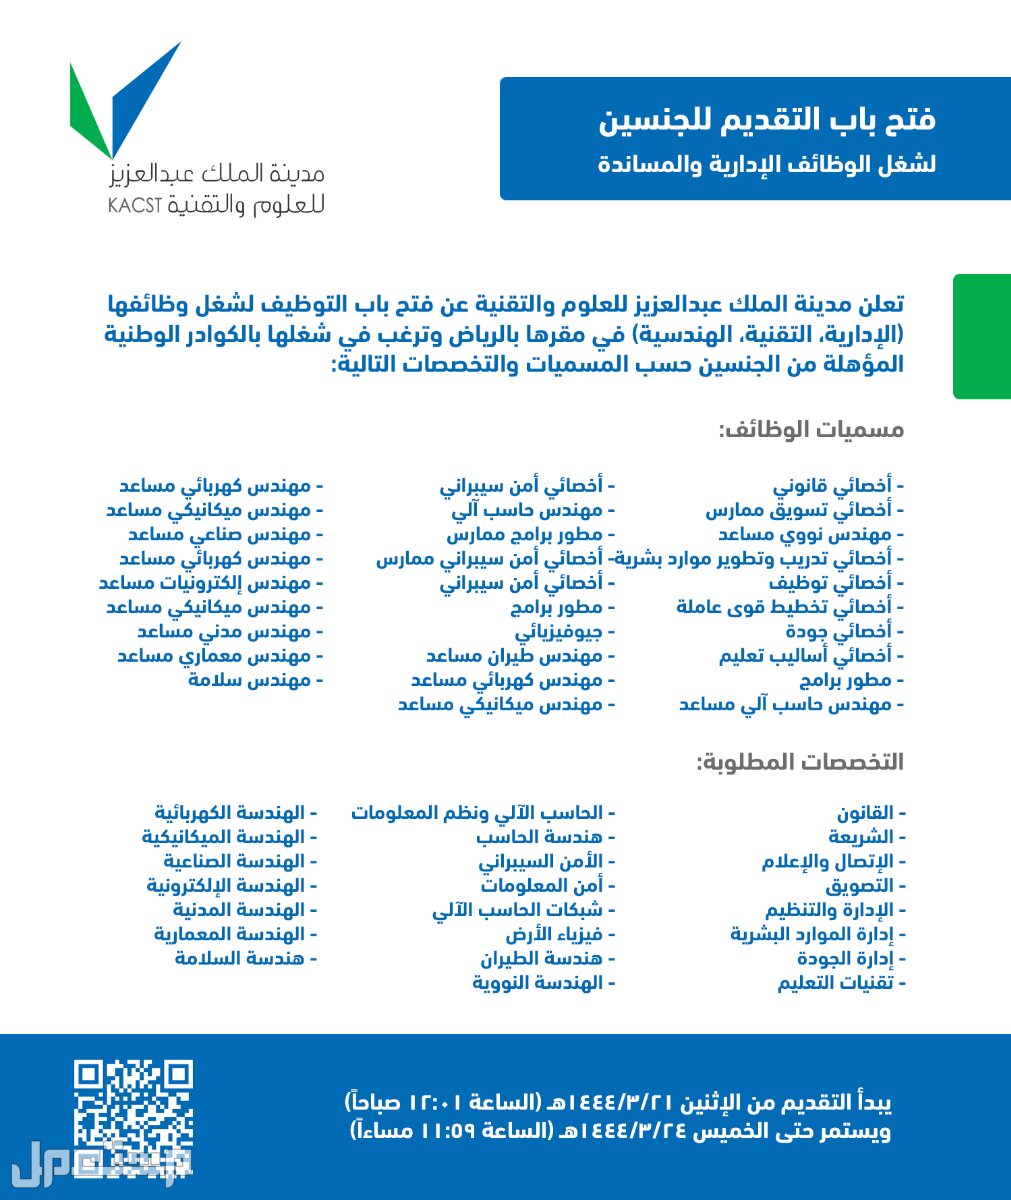 كل ما تحتاج إلى معرفته حول وظائف مدينة الملك عبدالعزيز للعلوم والتقنية في مصر وظائف مدينة الملك عبدالعزيز للعلوم والتقنية